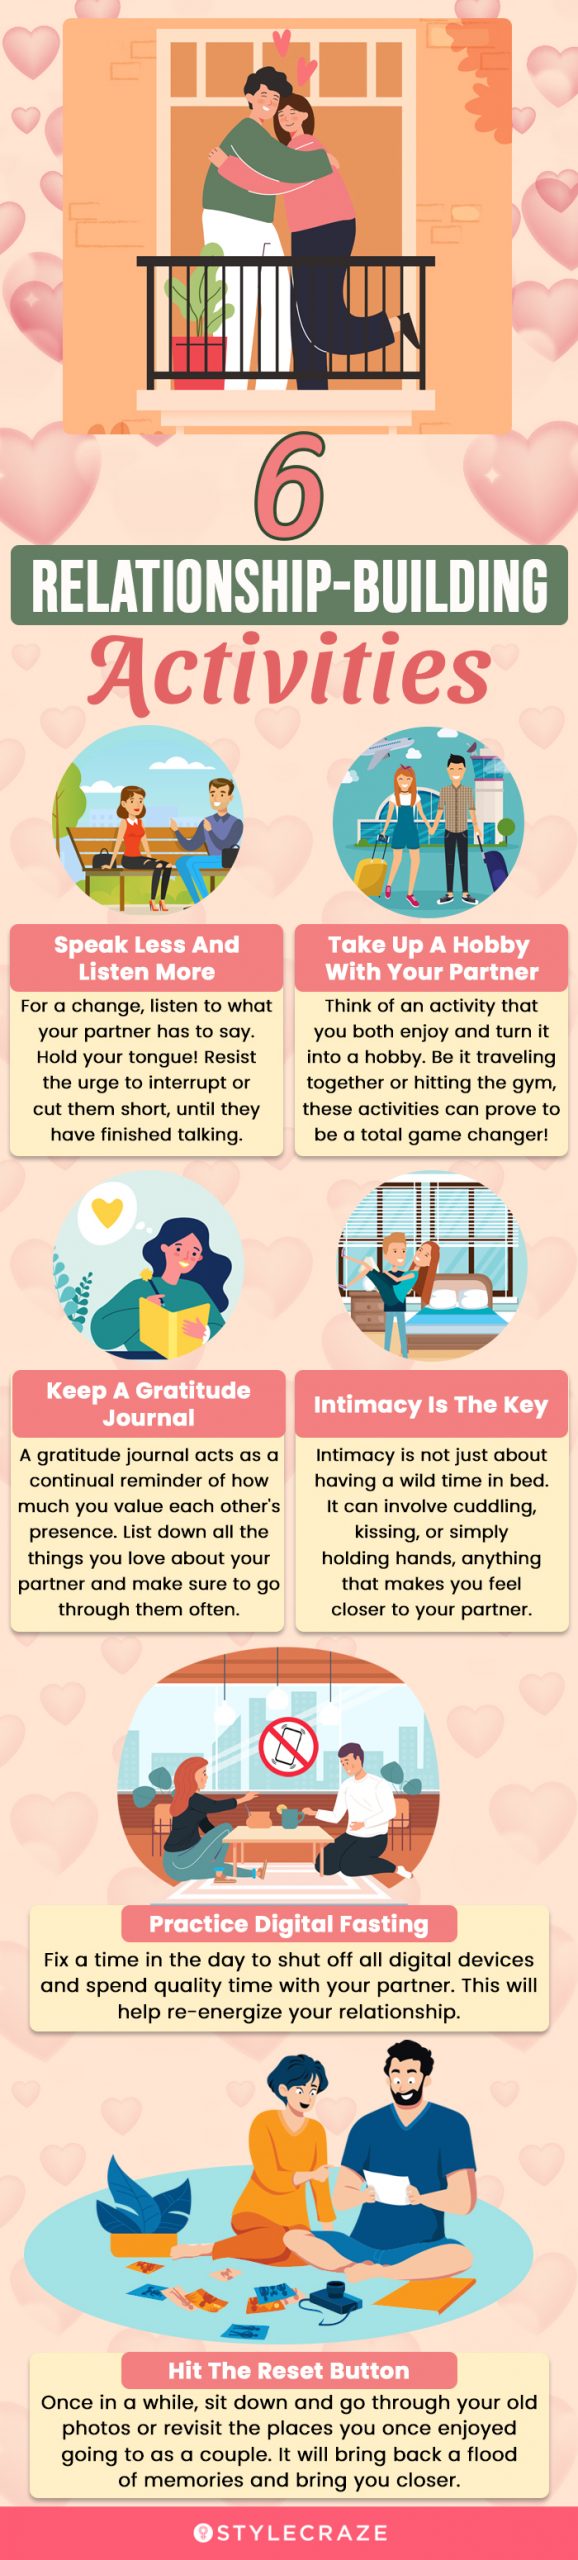 6 relationship building activities (infographic)